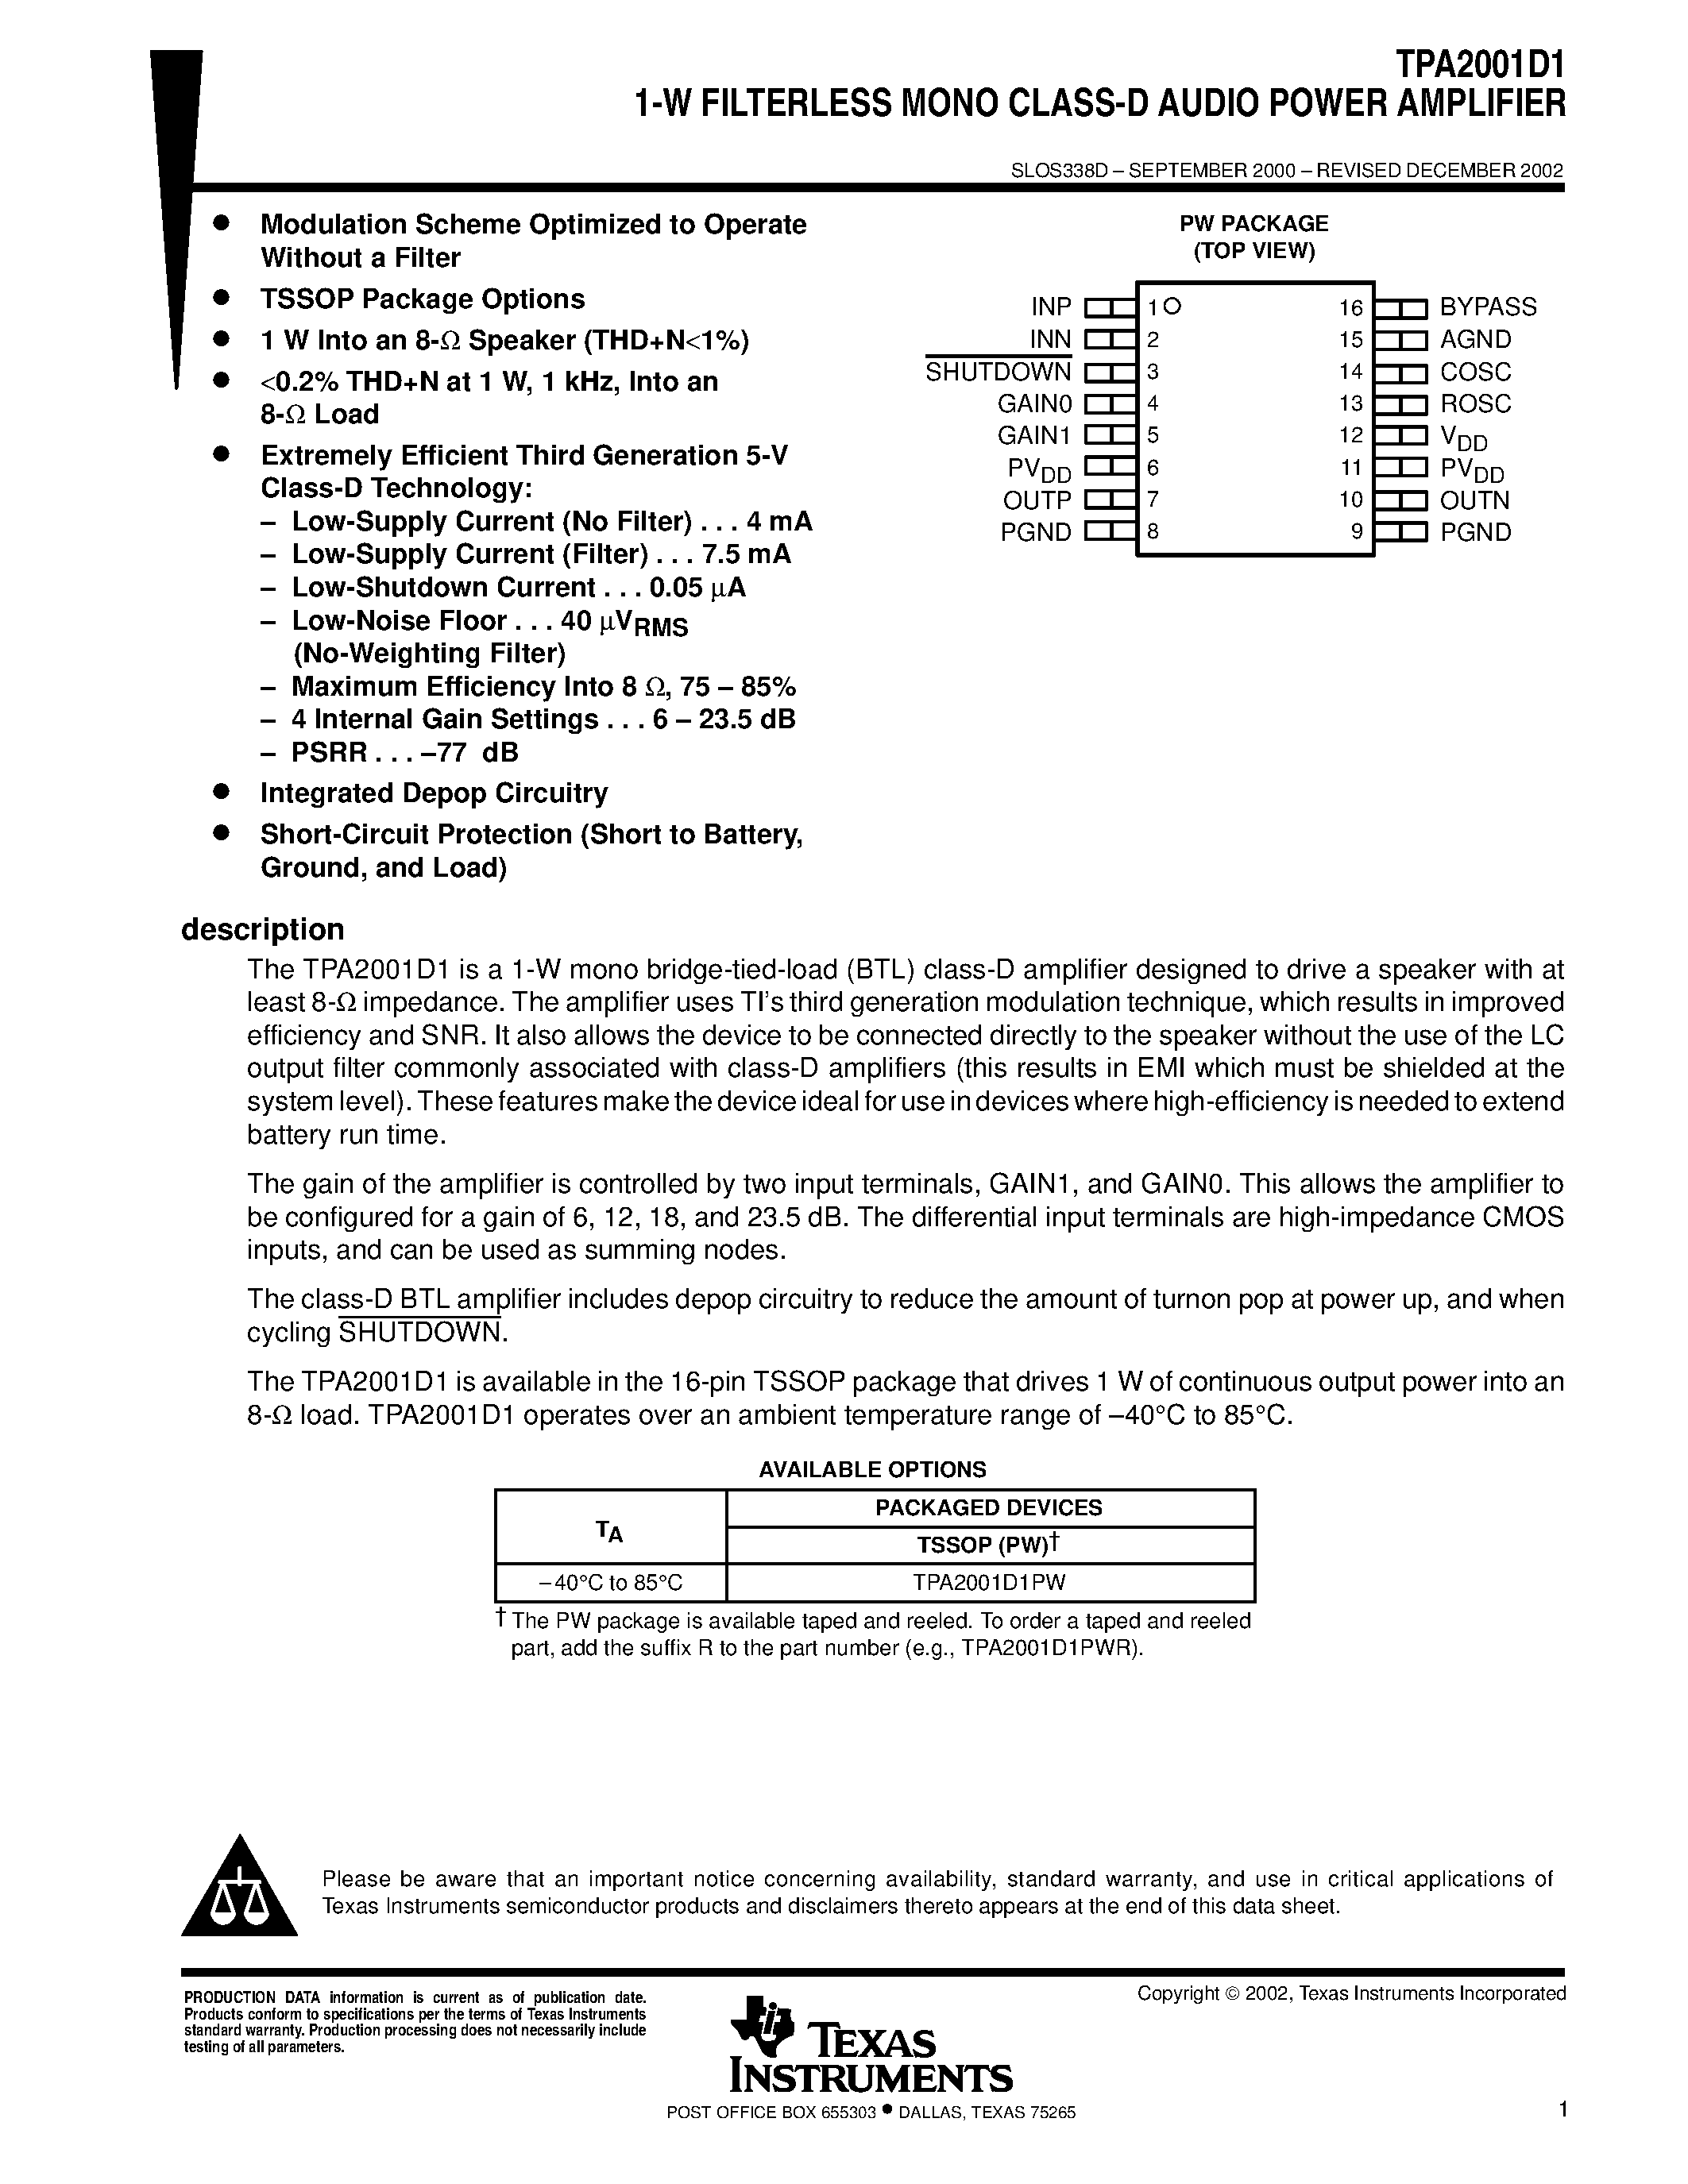 Datasheet TPA2001D1 - 1-W FILTERLESS MONO CLASS-D AUDIO POWER AMPLIFIER page 1